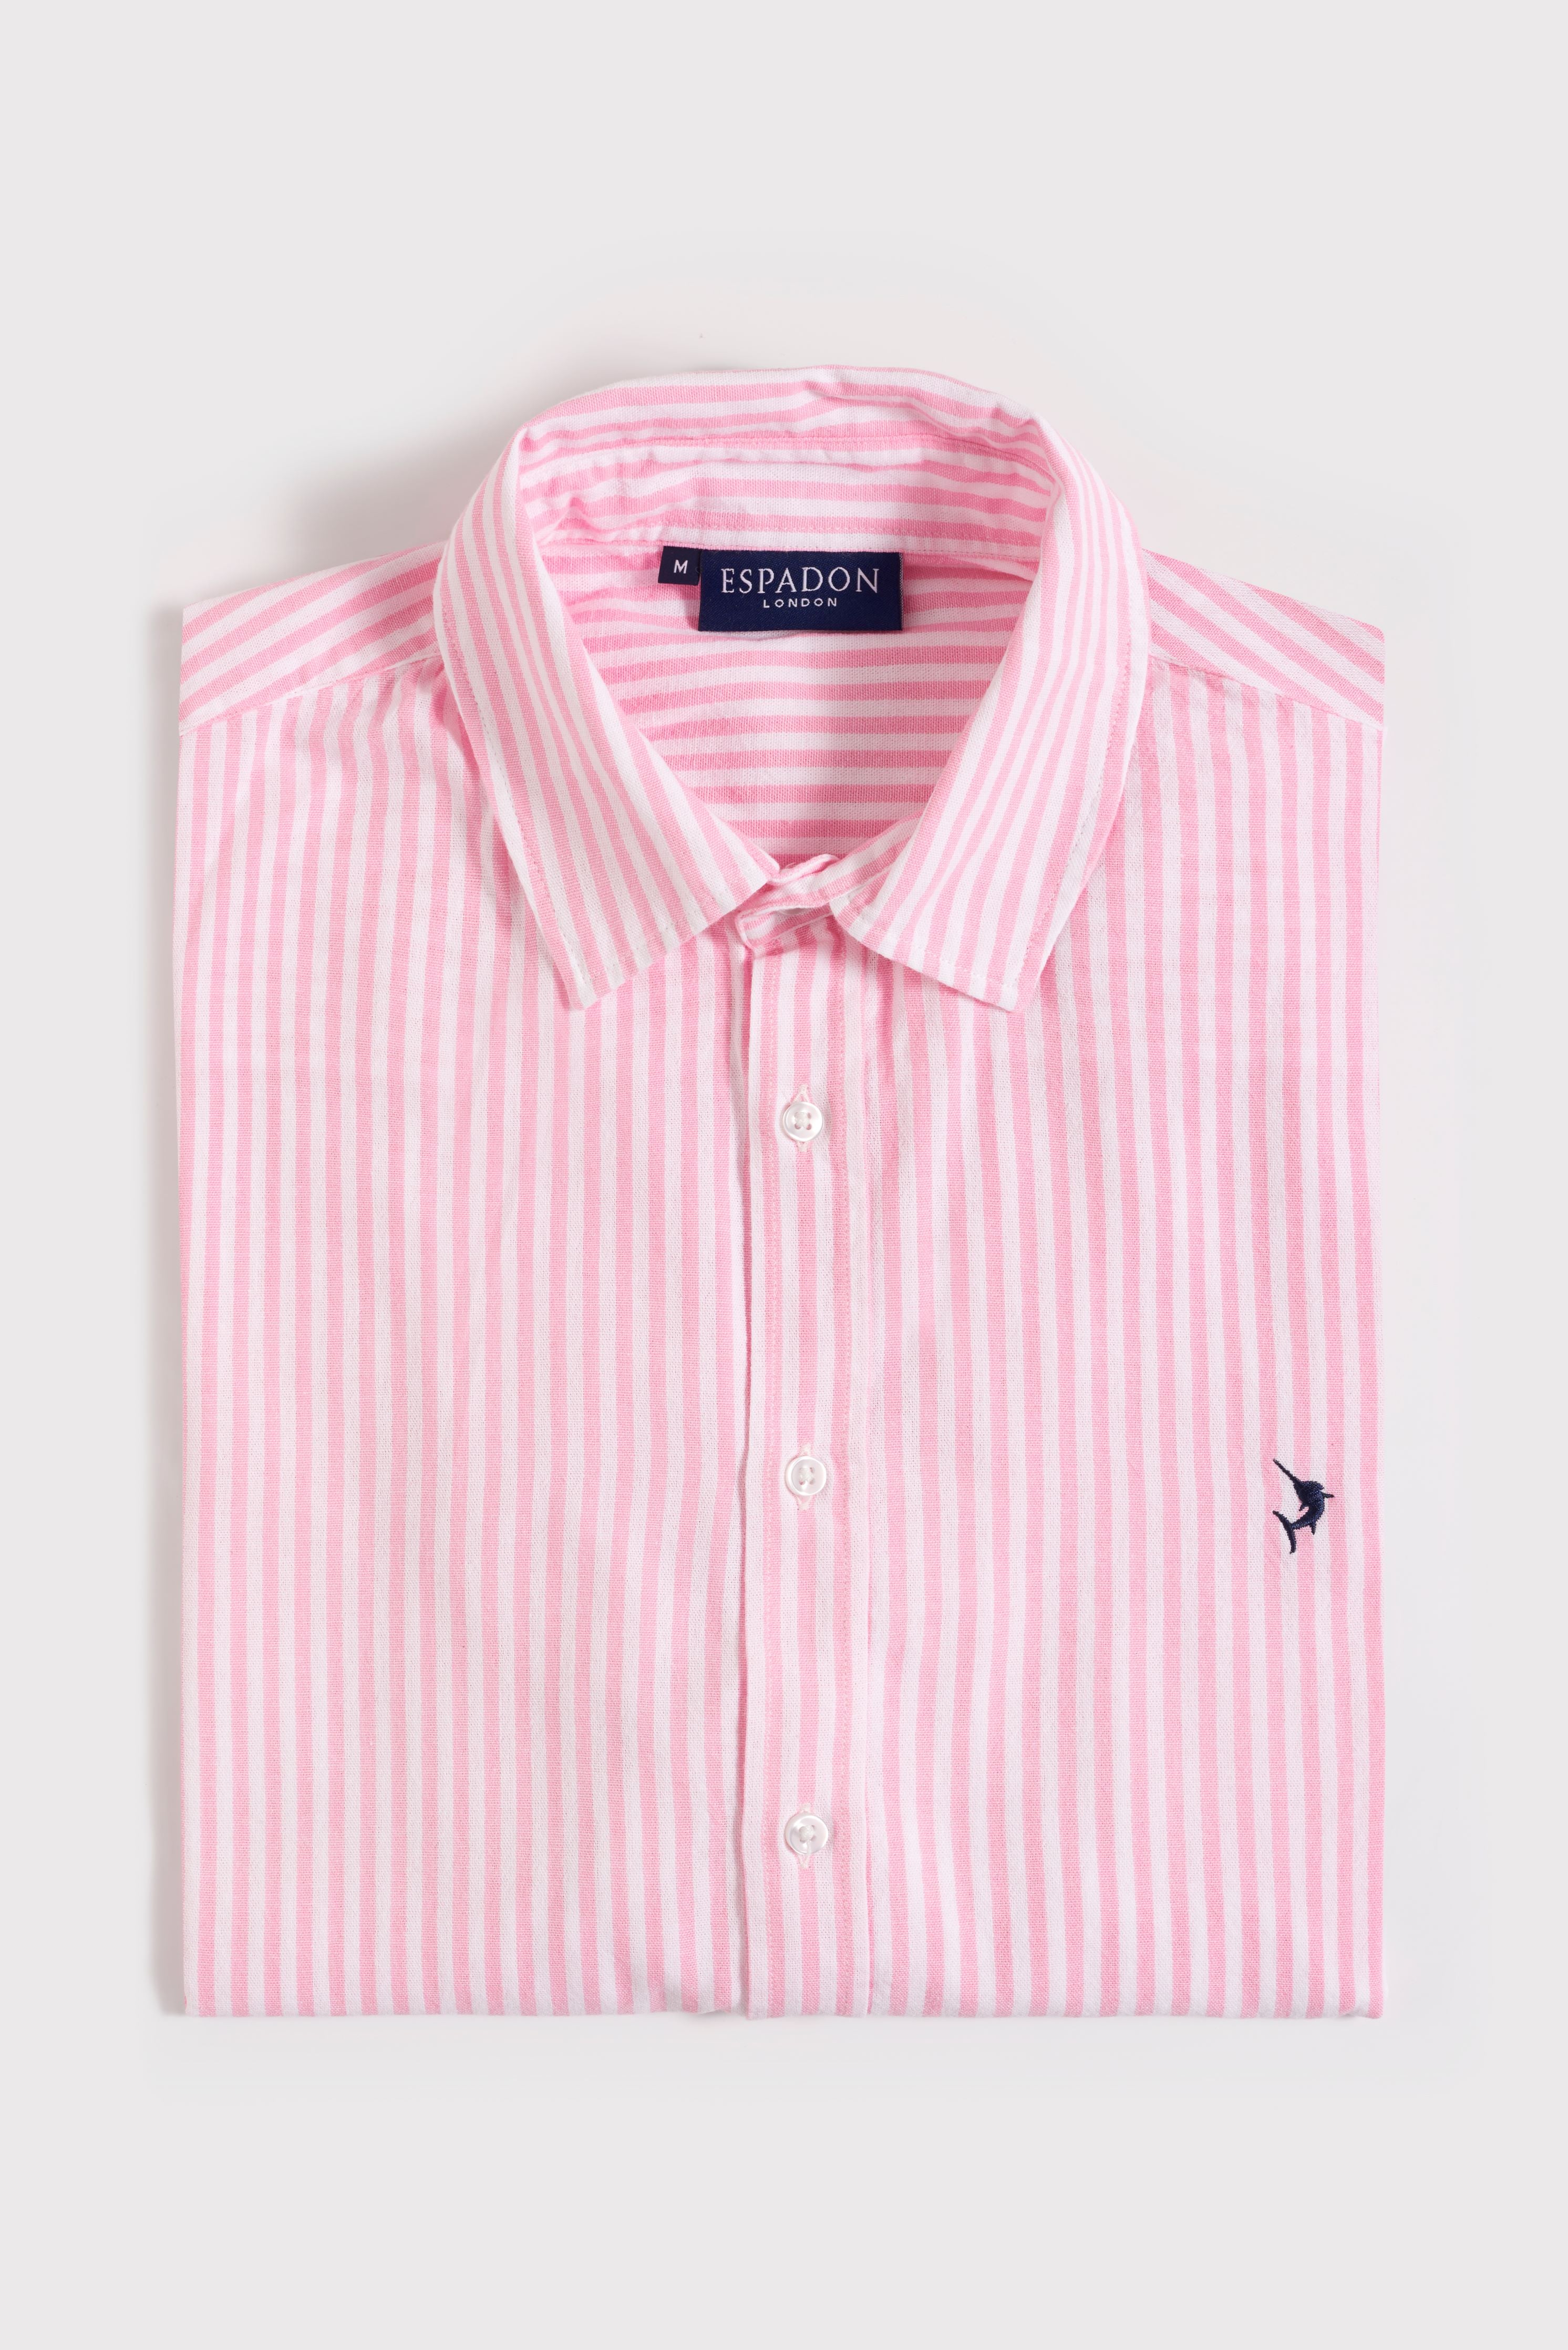 Espadon Striped Cotton Shirt - Pink